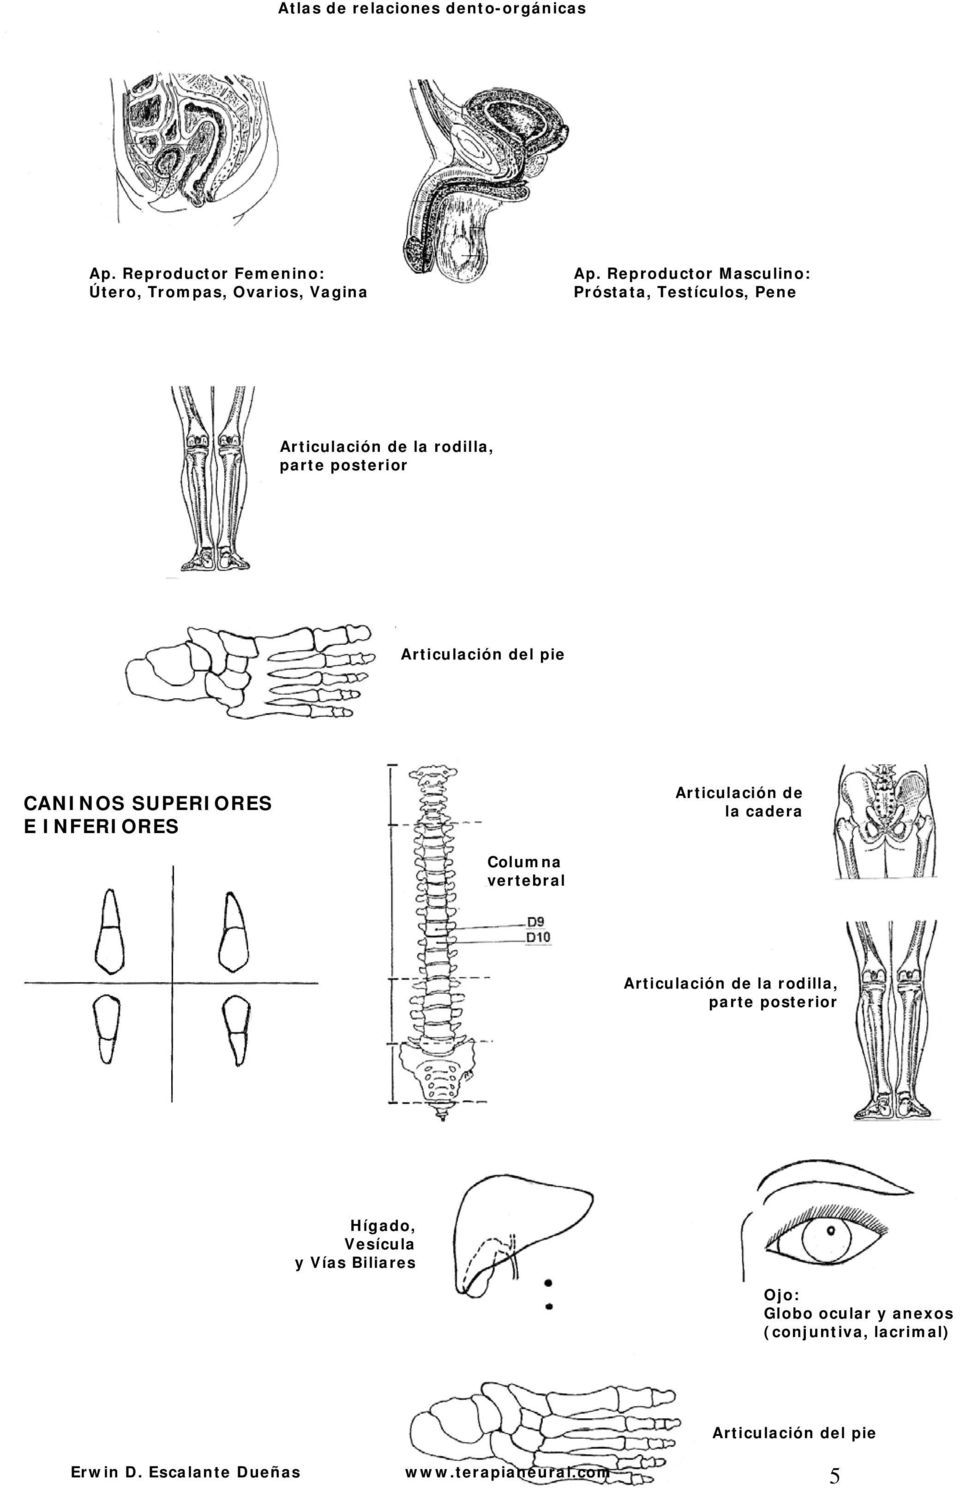 del pie CANINOS SUPERIORES E INFERIORES Articulación de la cadera Articulación de la rodilla, parte